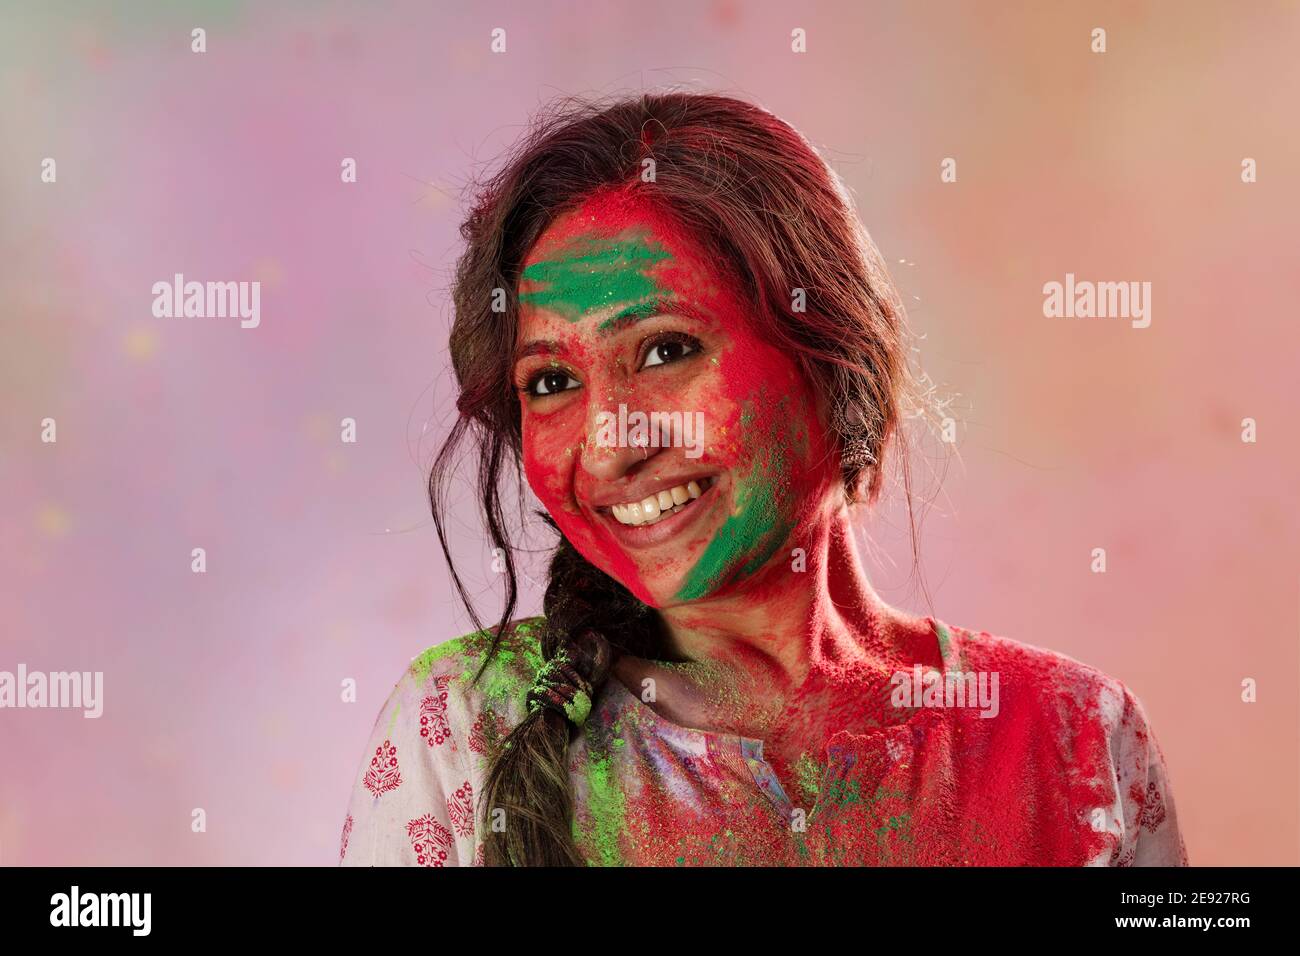 Porträt einer Frau, die holi mit Farben auf ihr feiert Gesicht Stockfoto